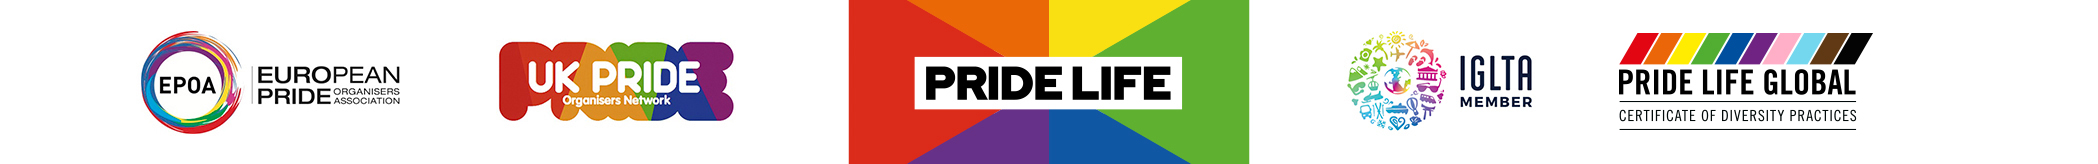 Pride Life Global